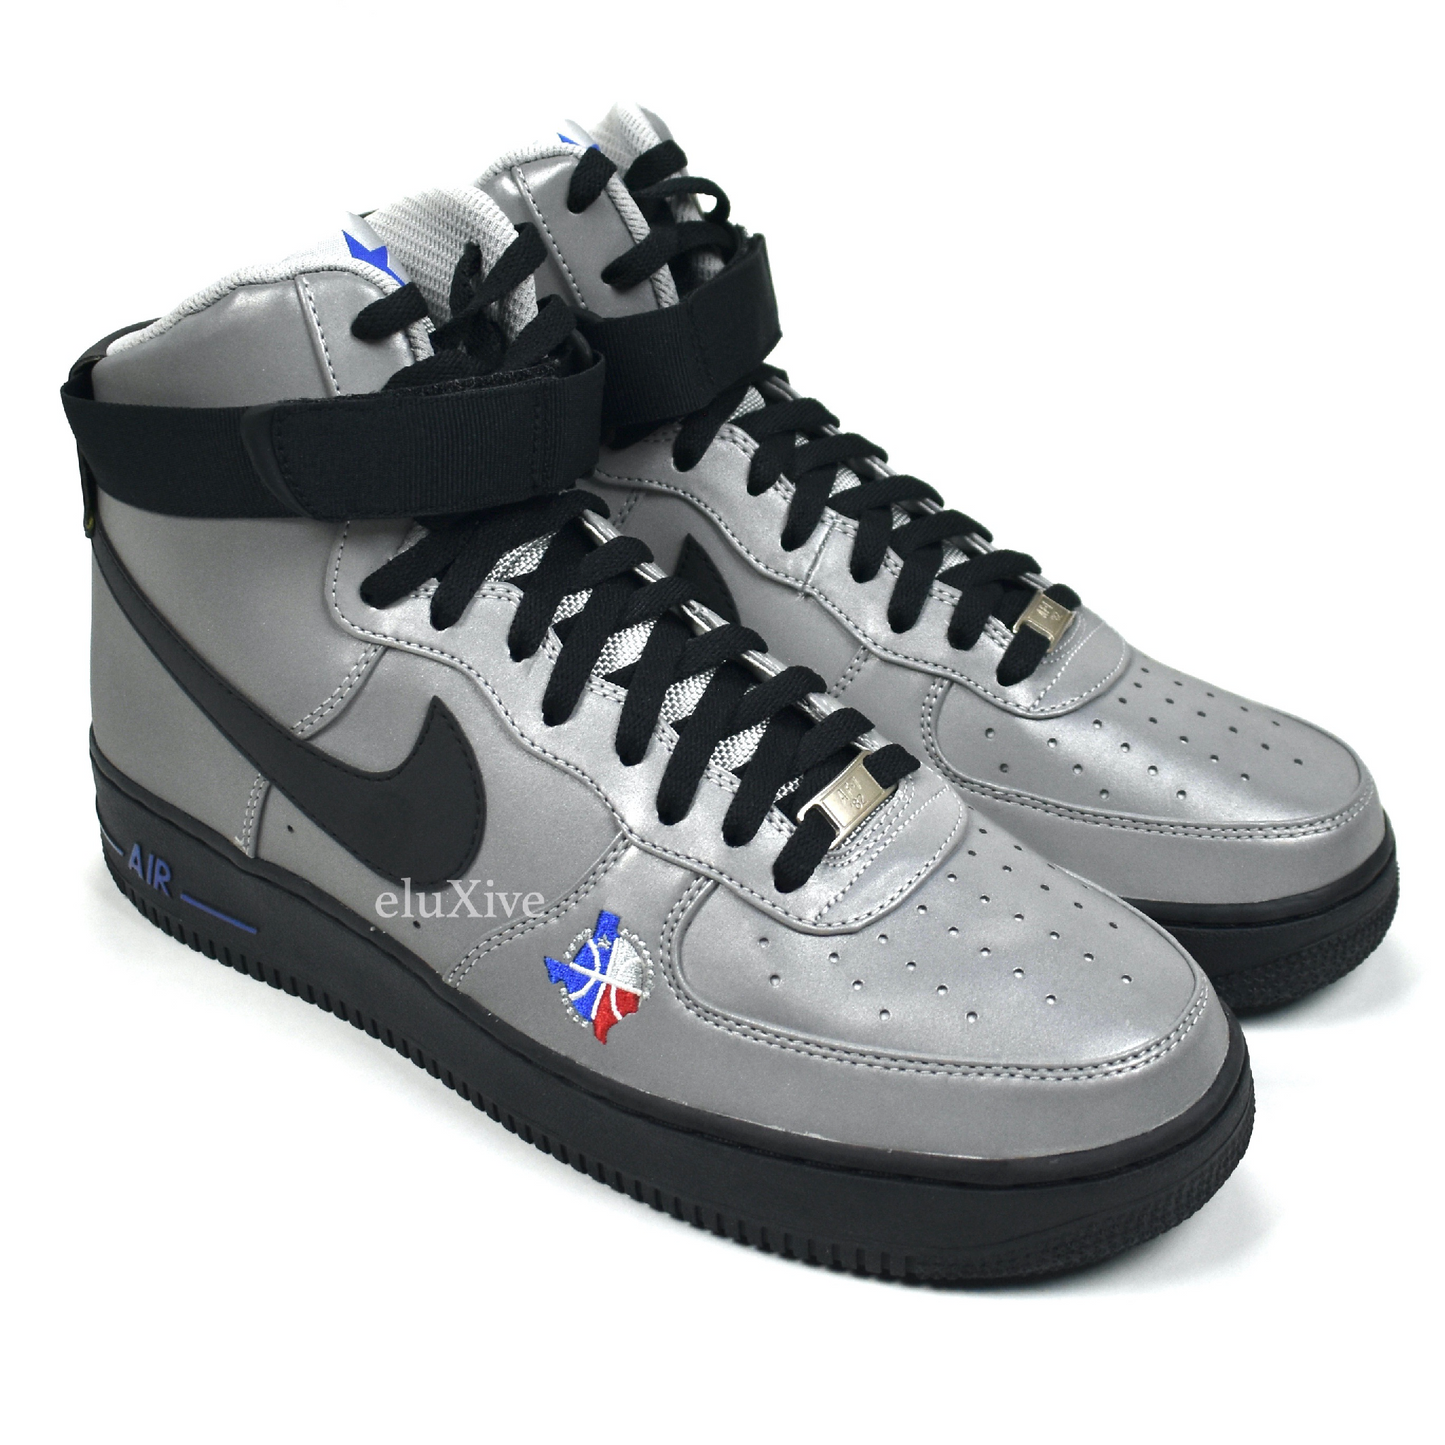 Nike - Air Force 1 High Premium LE Dallas All Star (3M Metallic Silver)